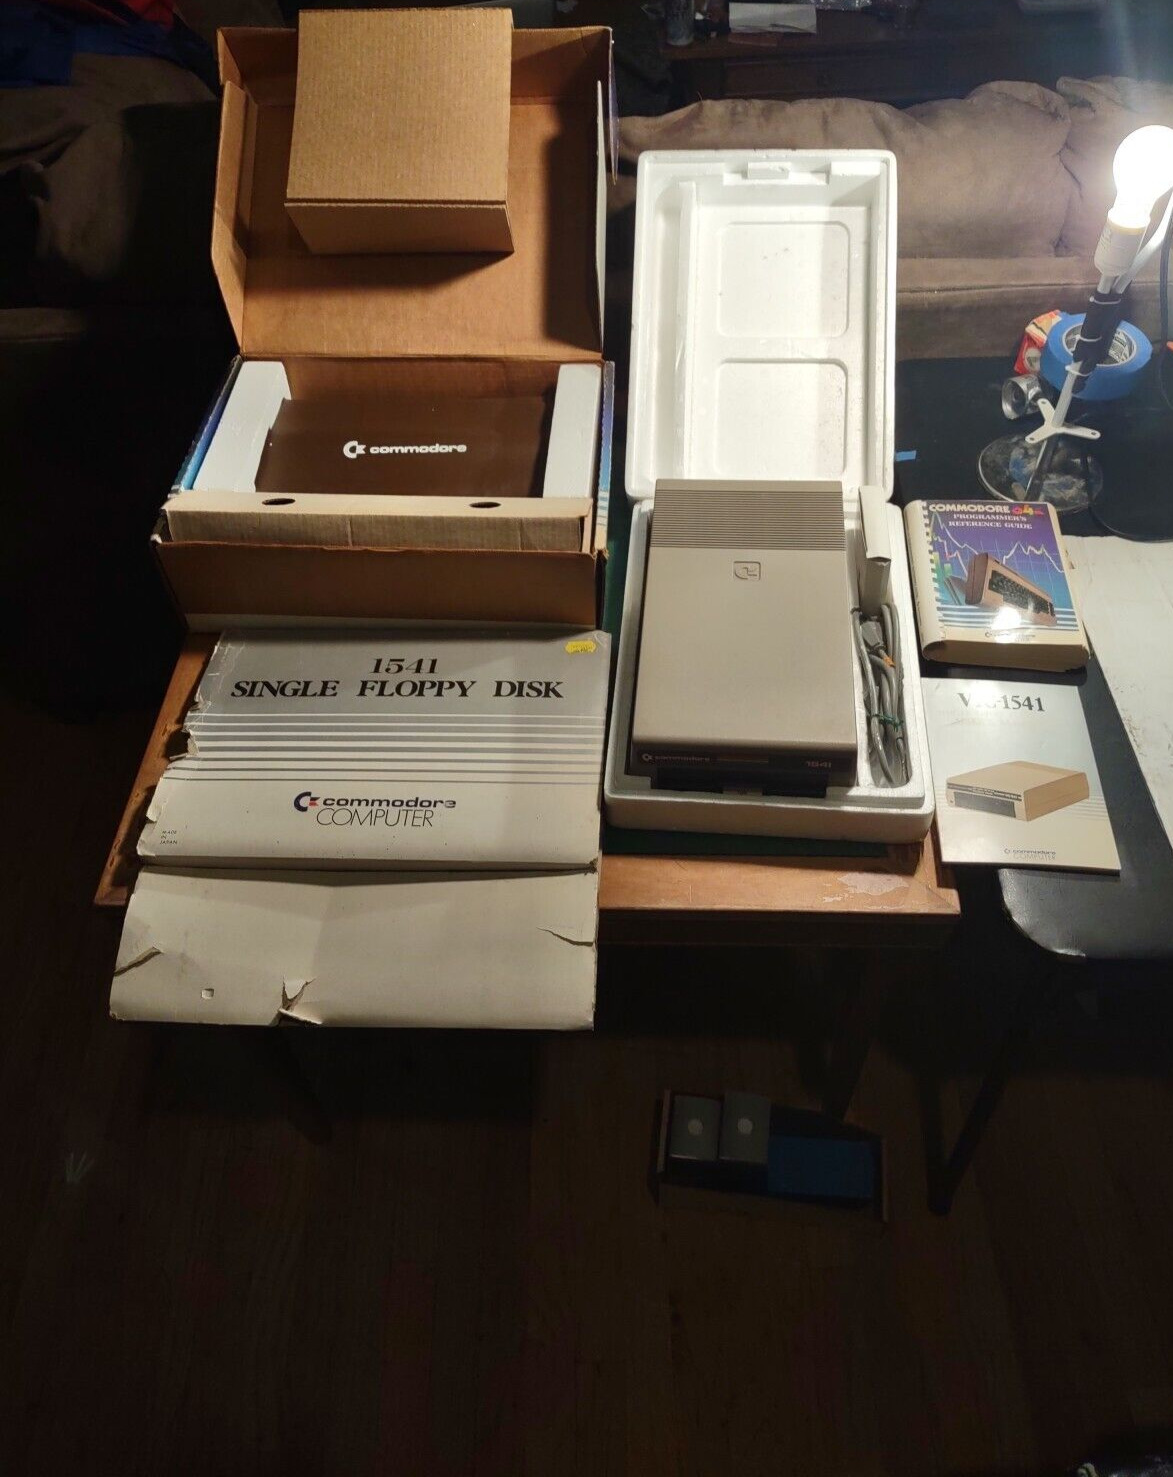 Rare Vtg NOS Bundle Commodore 64 Computer & Floppy Disk 1541